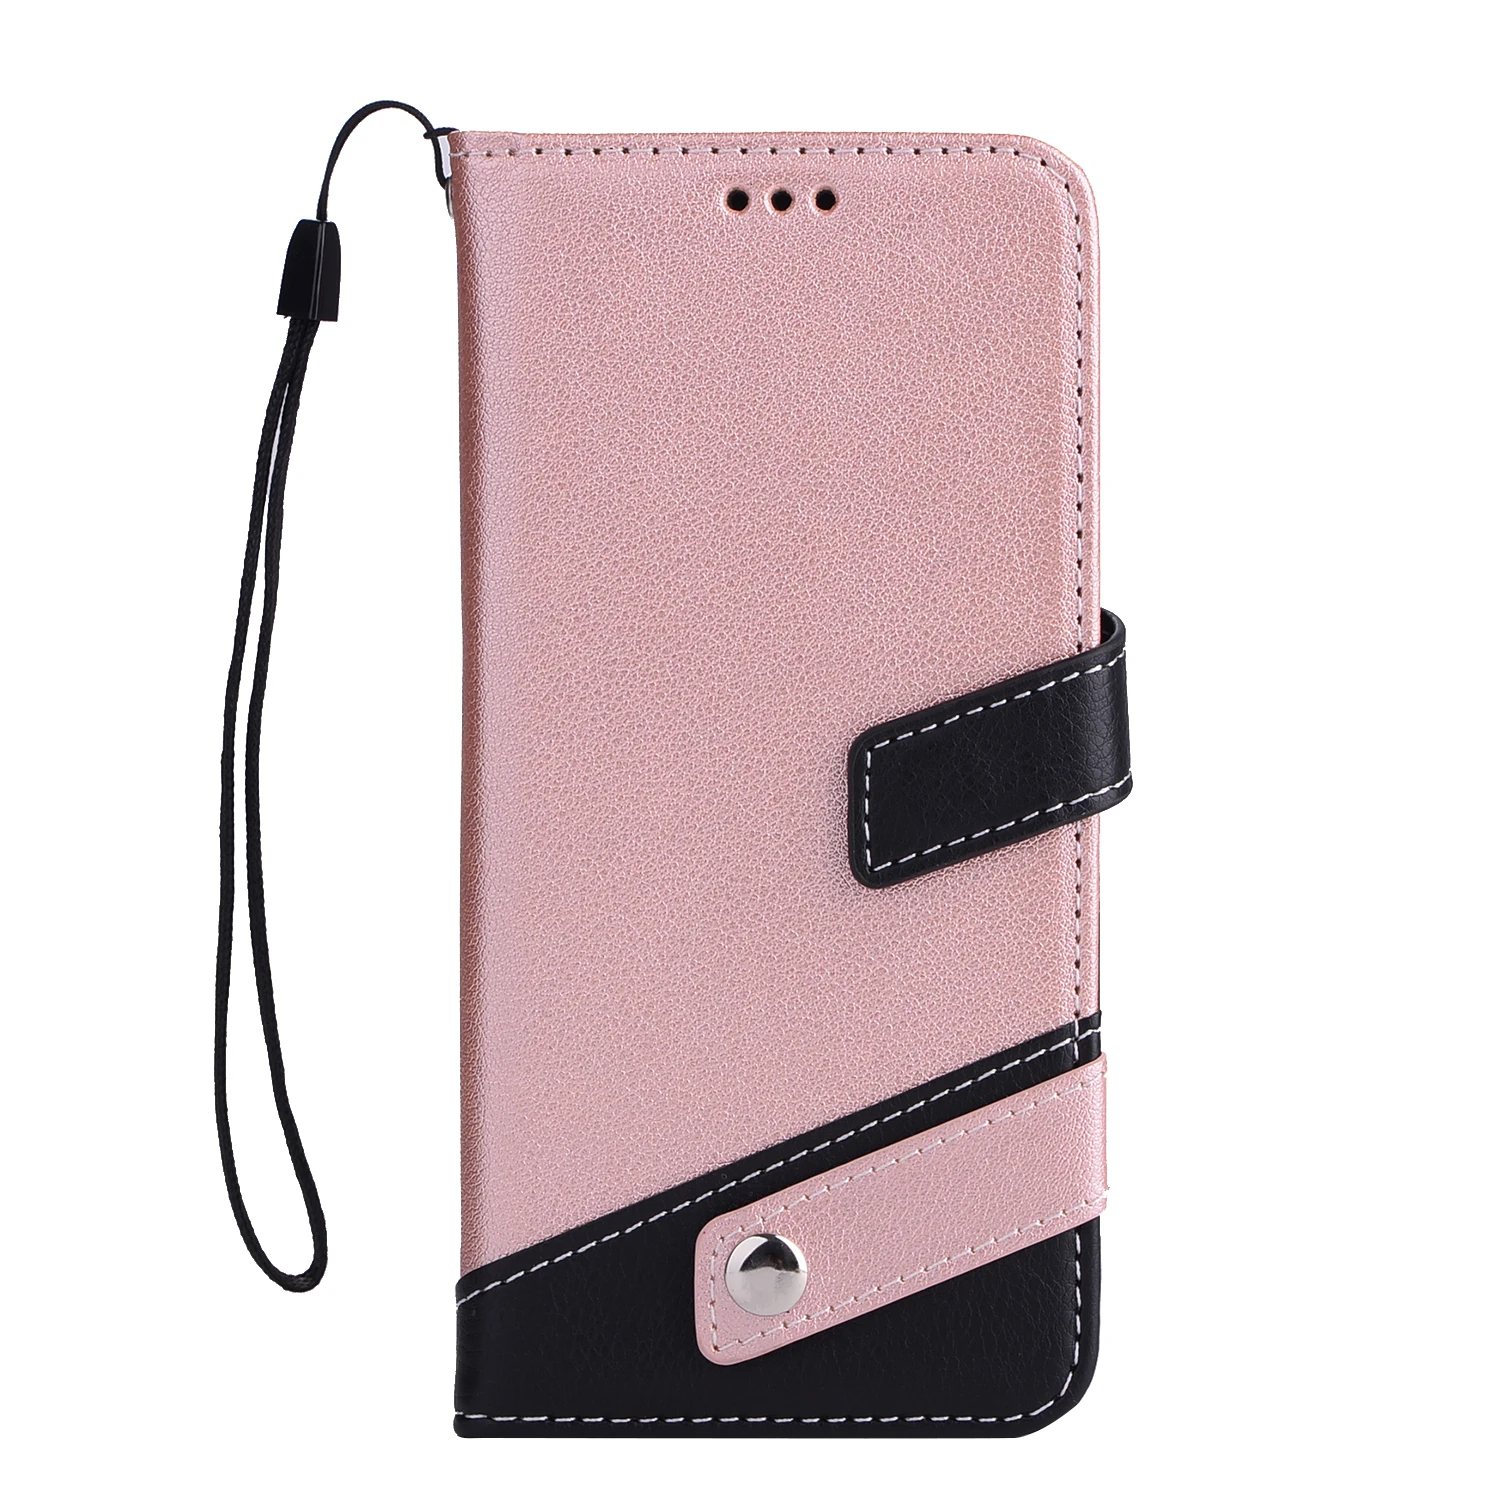 Nephy модный кожаный чехол-портмоне с застежкой Чехол для телефона для samsung Galaxy S8 S9 плюс S6 S7 край A3 A5 J3 J5 J7 Pro A8 Note8 задняя крышка